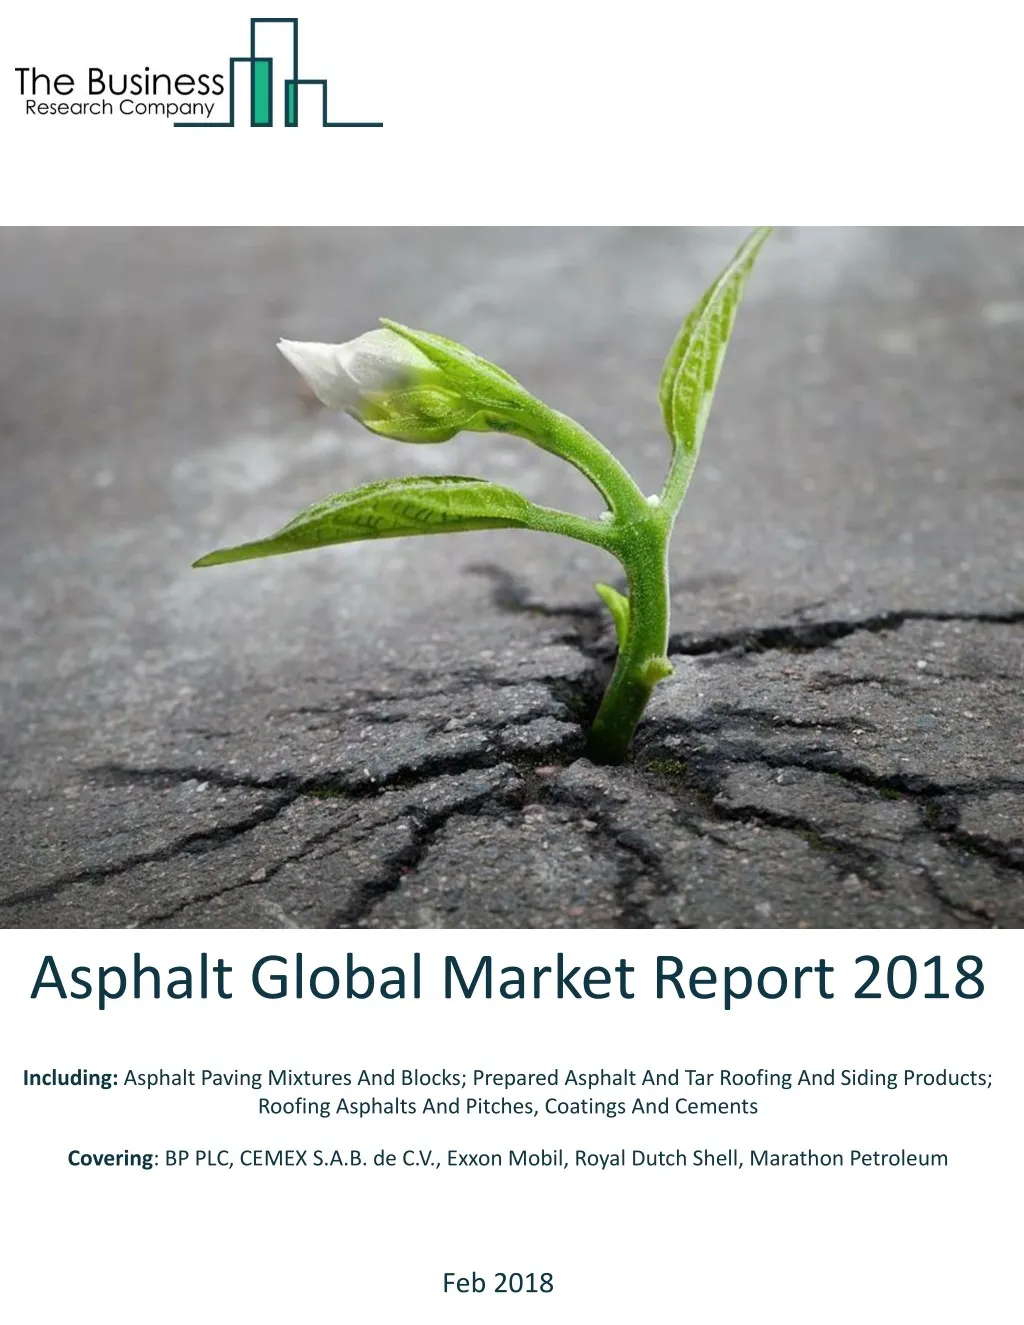 asphalt global market report 2018